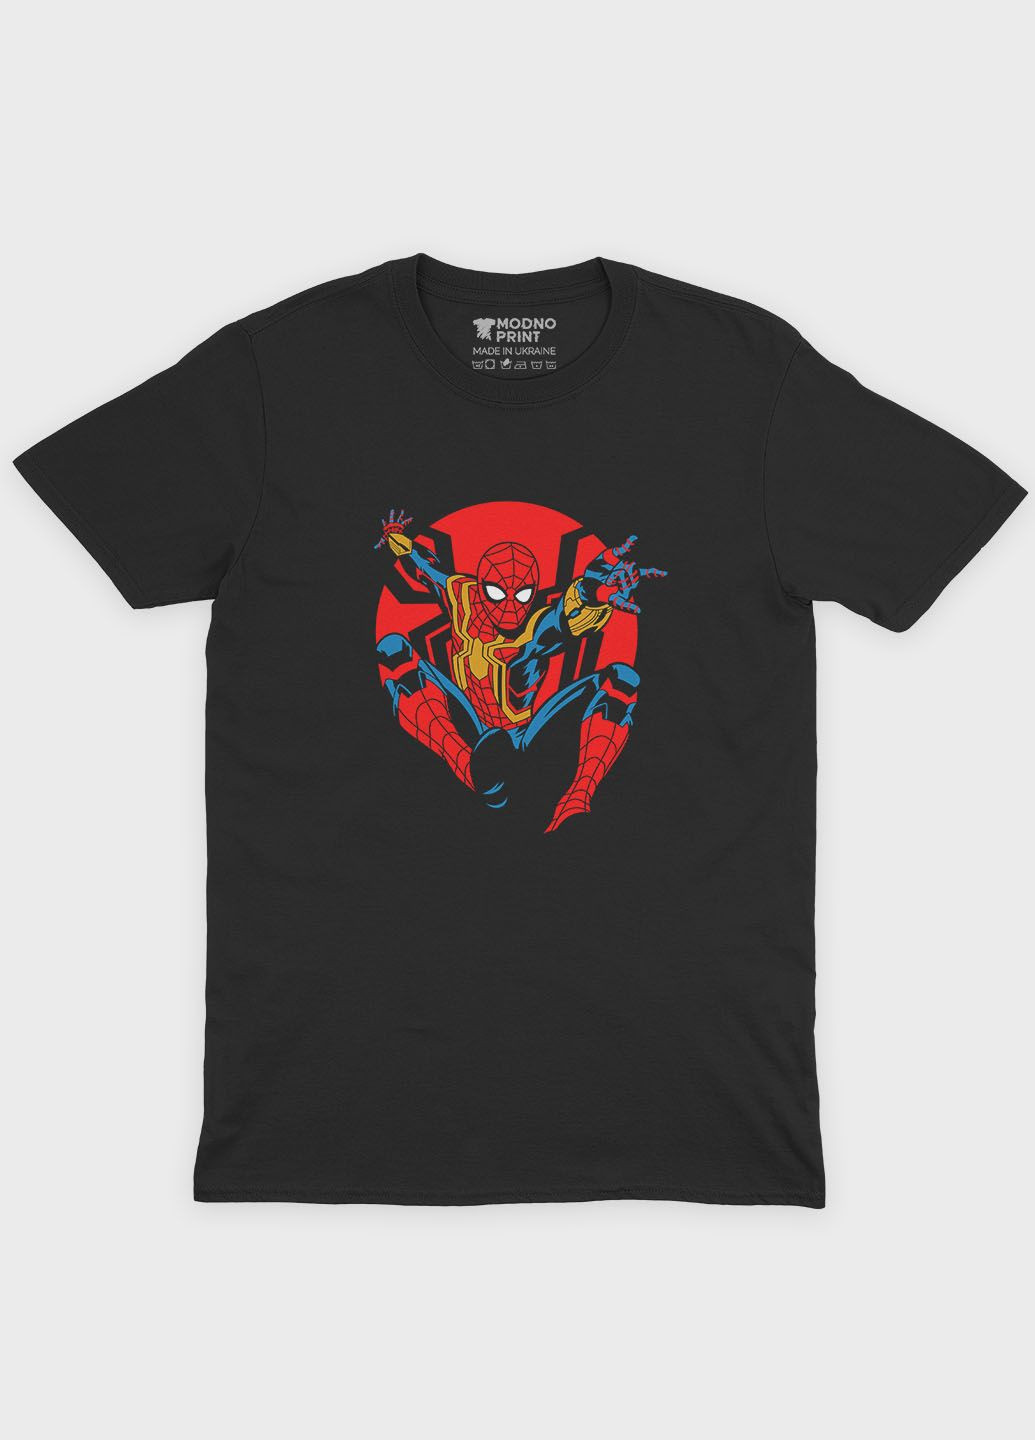 Черная демисезонная футболка для мальчика с принтом супергероя - человек-паук (ts001-1-bl-006-014-075-b) Modno